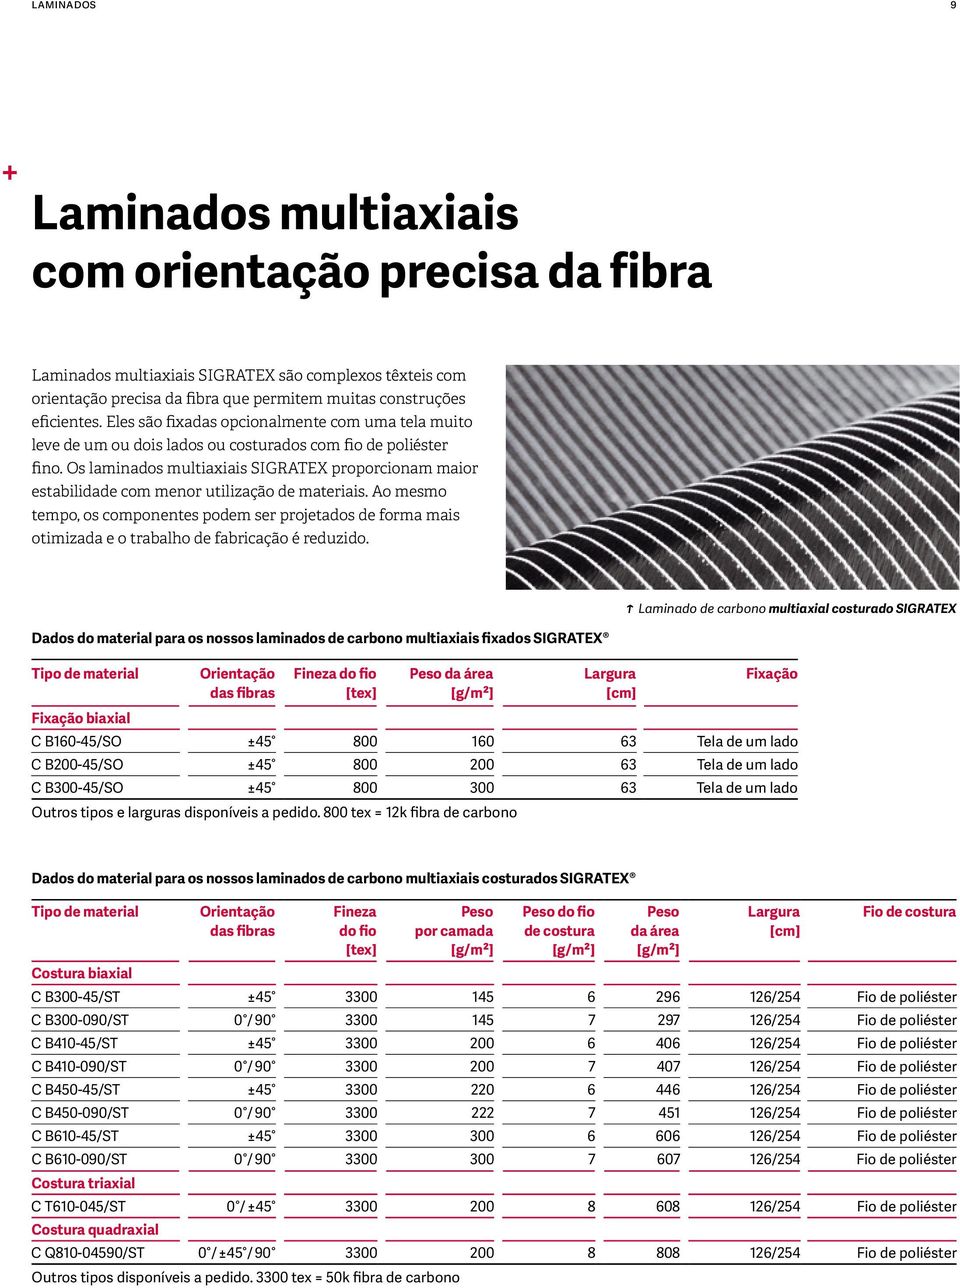 Os laminados multiaxiais SIGRATEX proporcionam maior estabilidade com menor utilização de materiais.